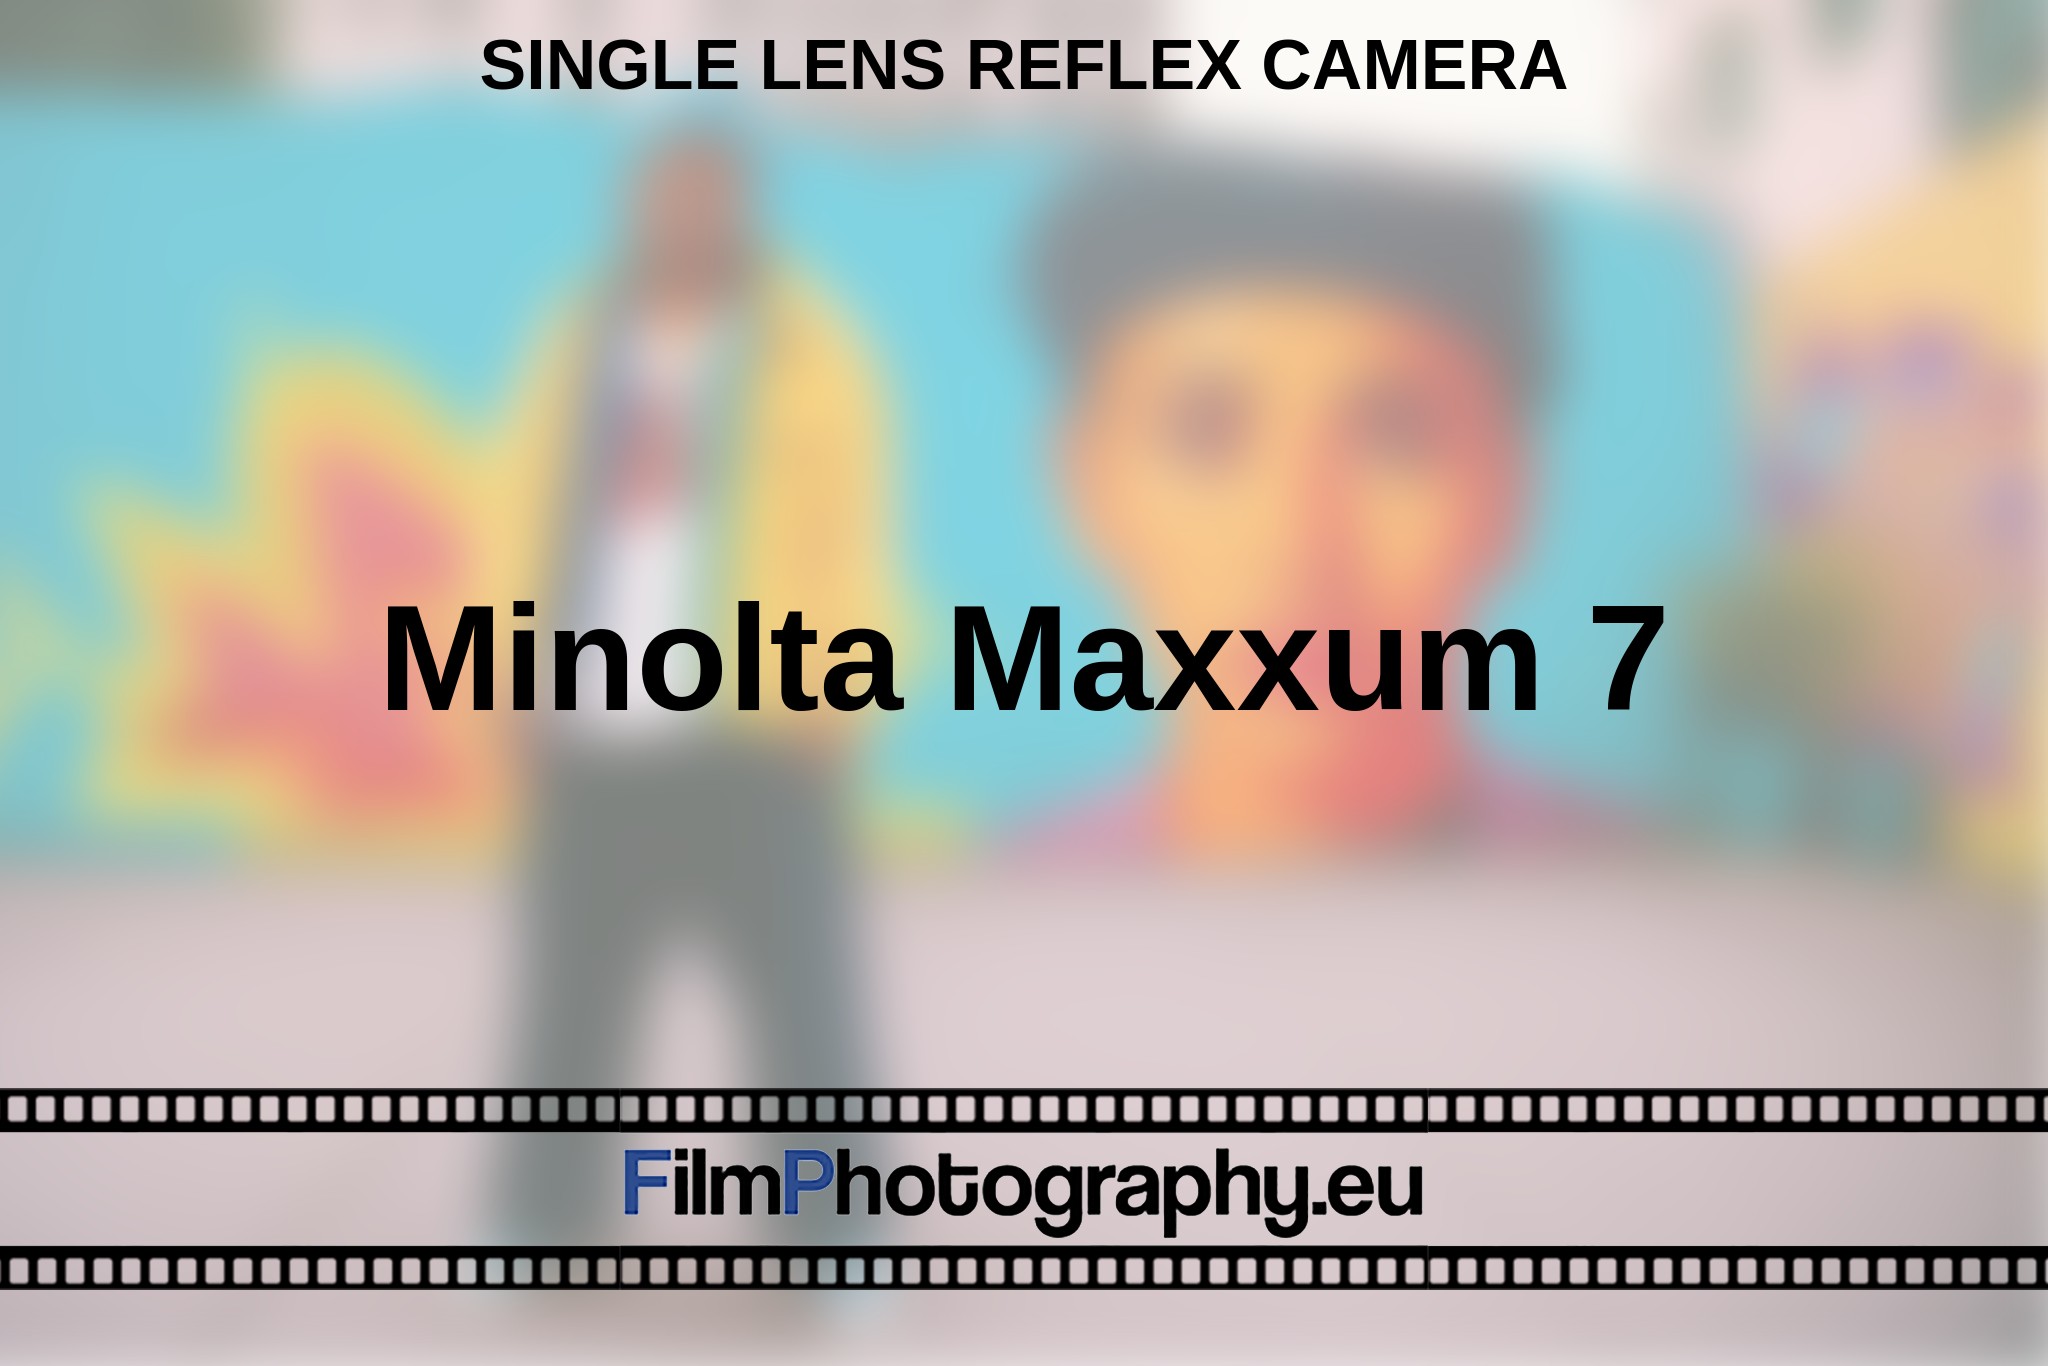 minolta-maxxum-7-single-lens-reflex-camera-en-bnv.jpg